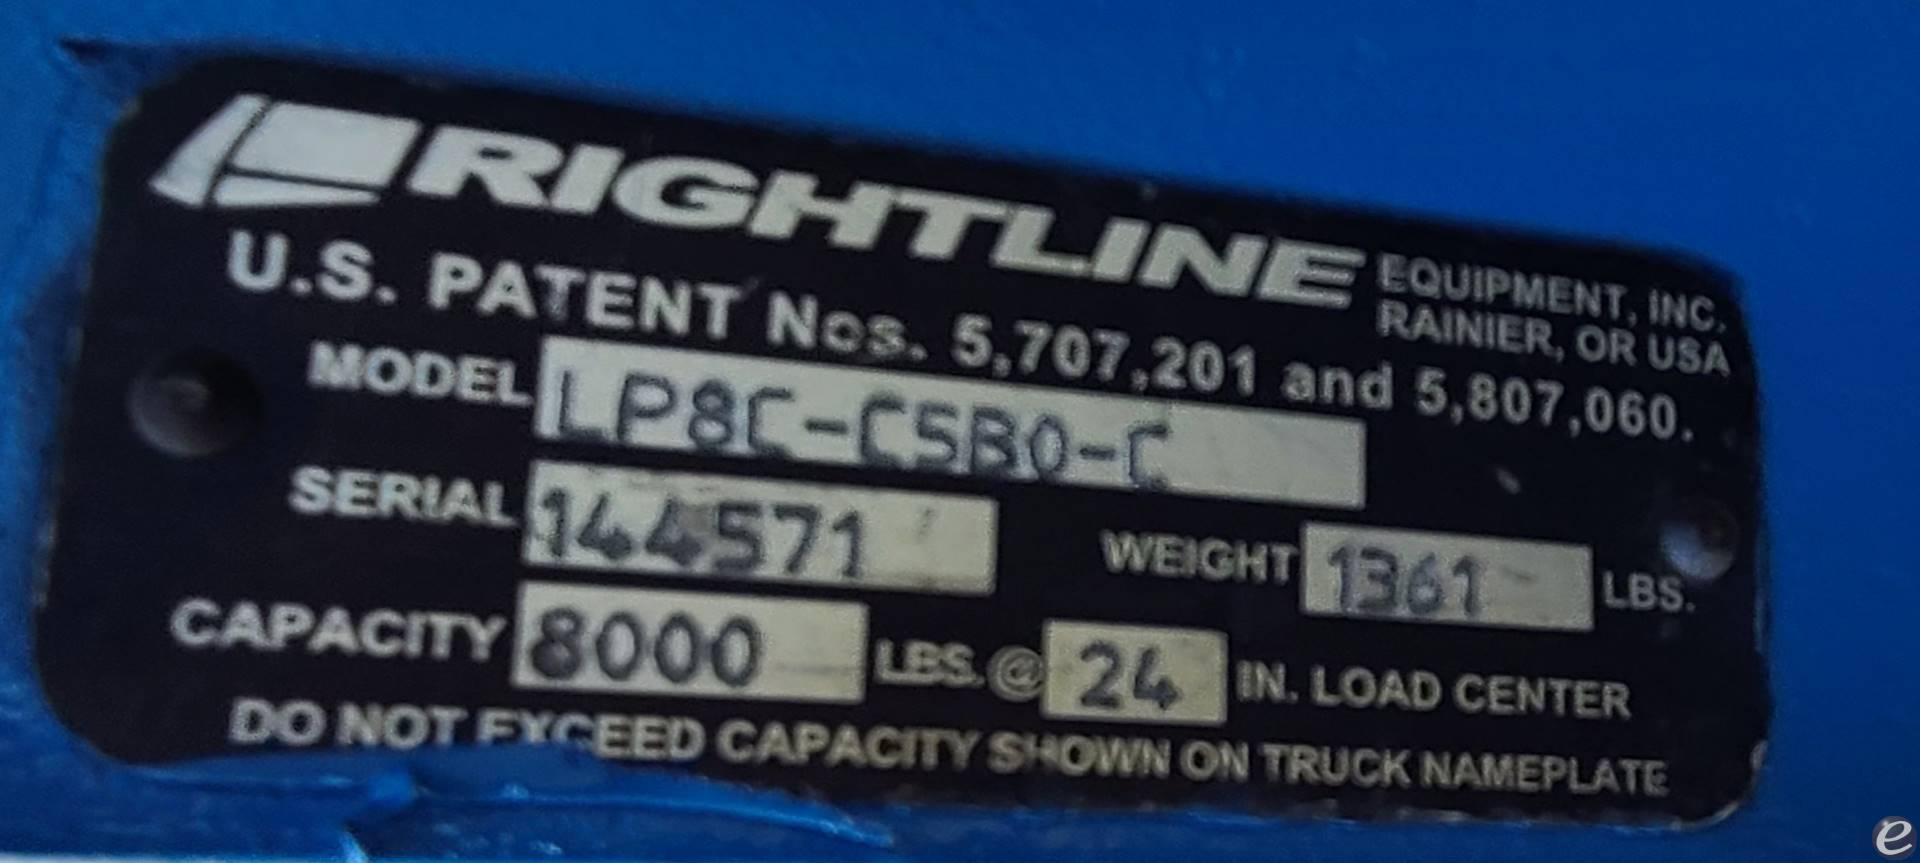 Rightline LP8C - C5B0 - C